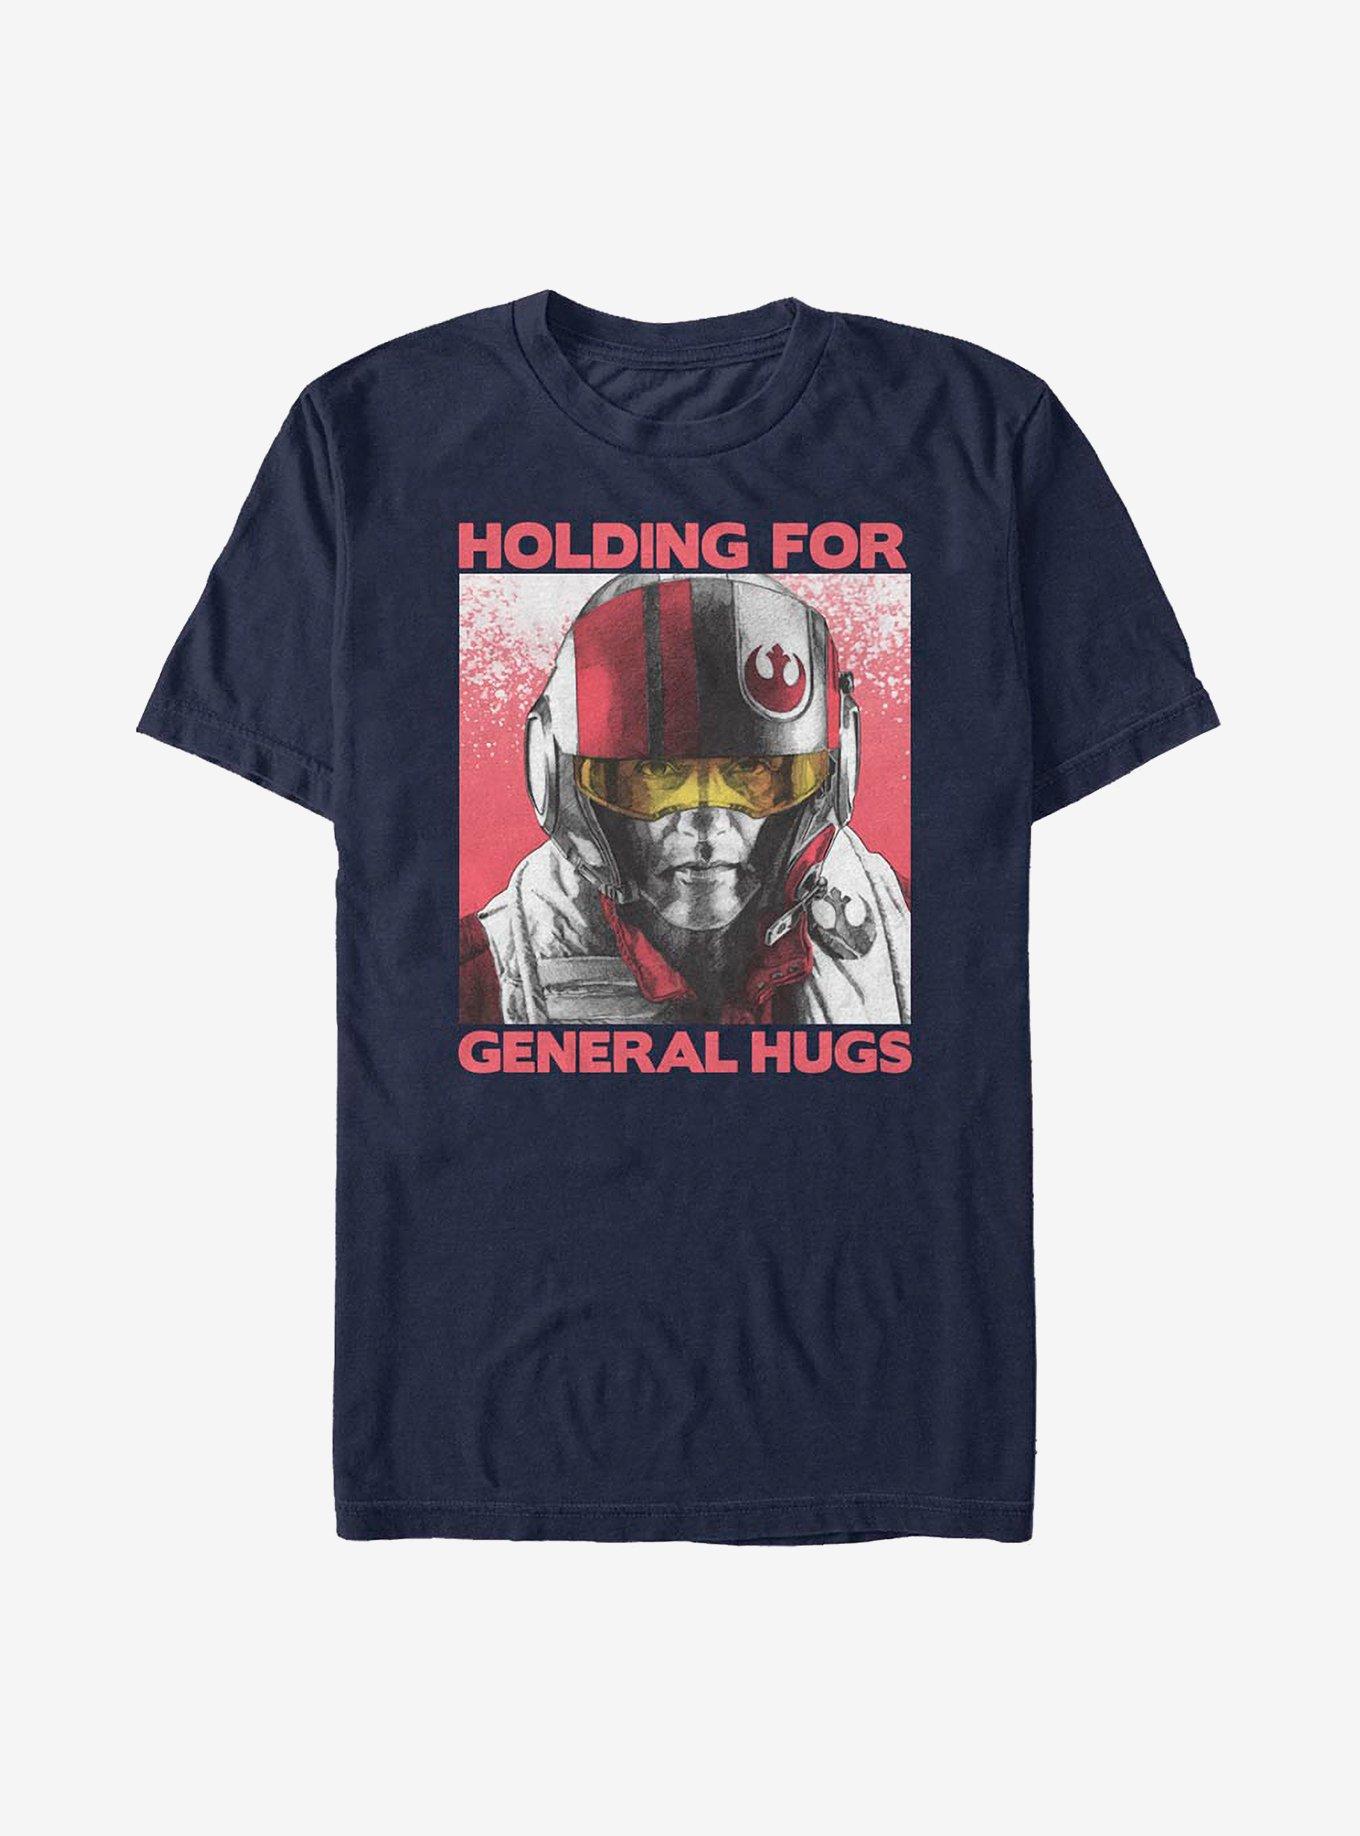 Star Wars: The Last Jedi General Hugs T-Shirt